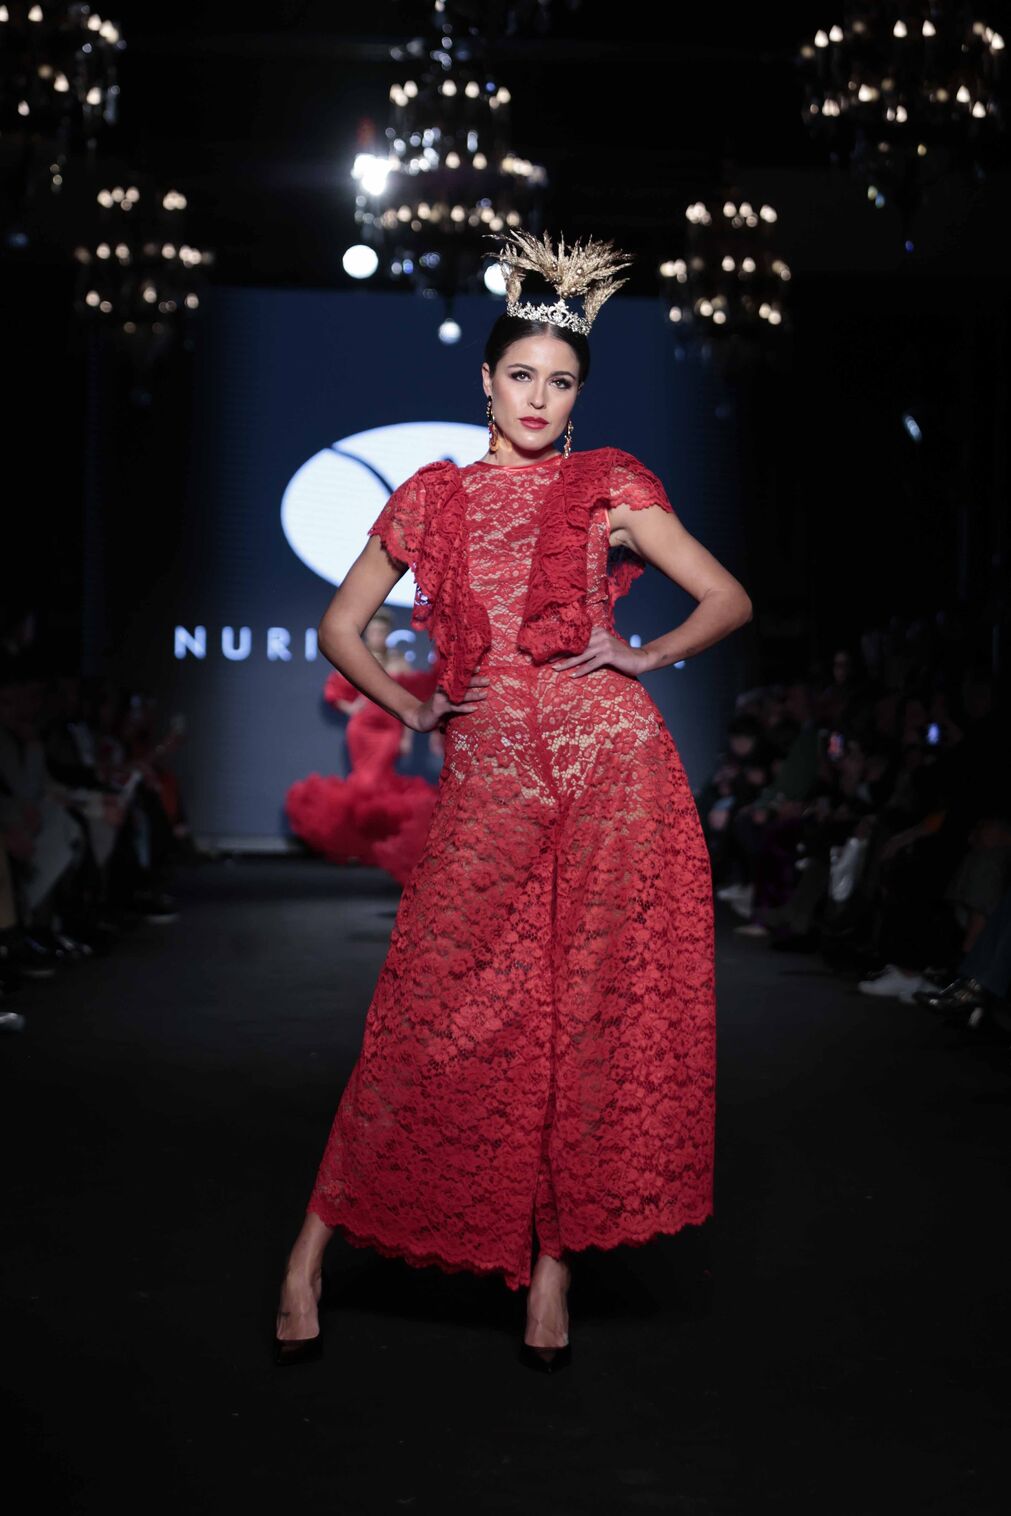 El desfile de Nuria Carmona en We Love Flamenco 2024, todas las fotos